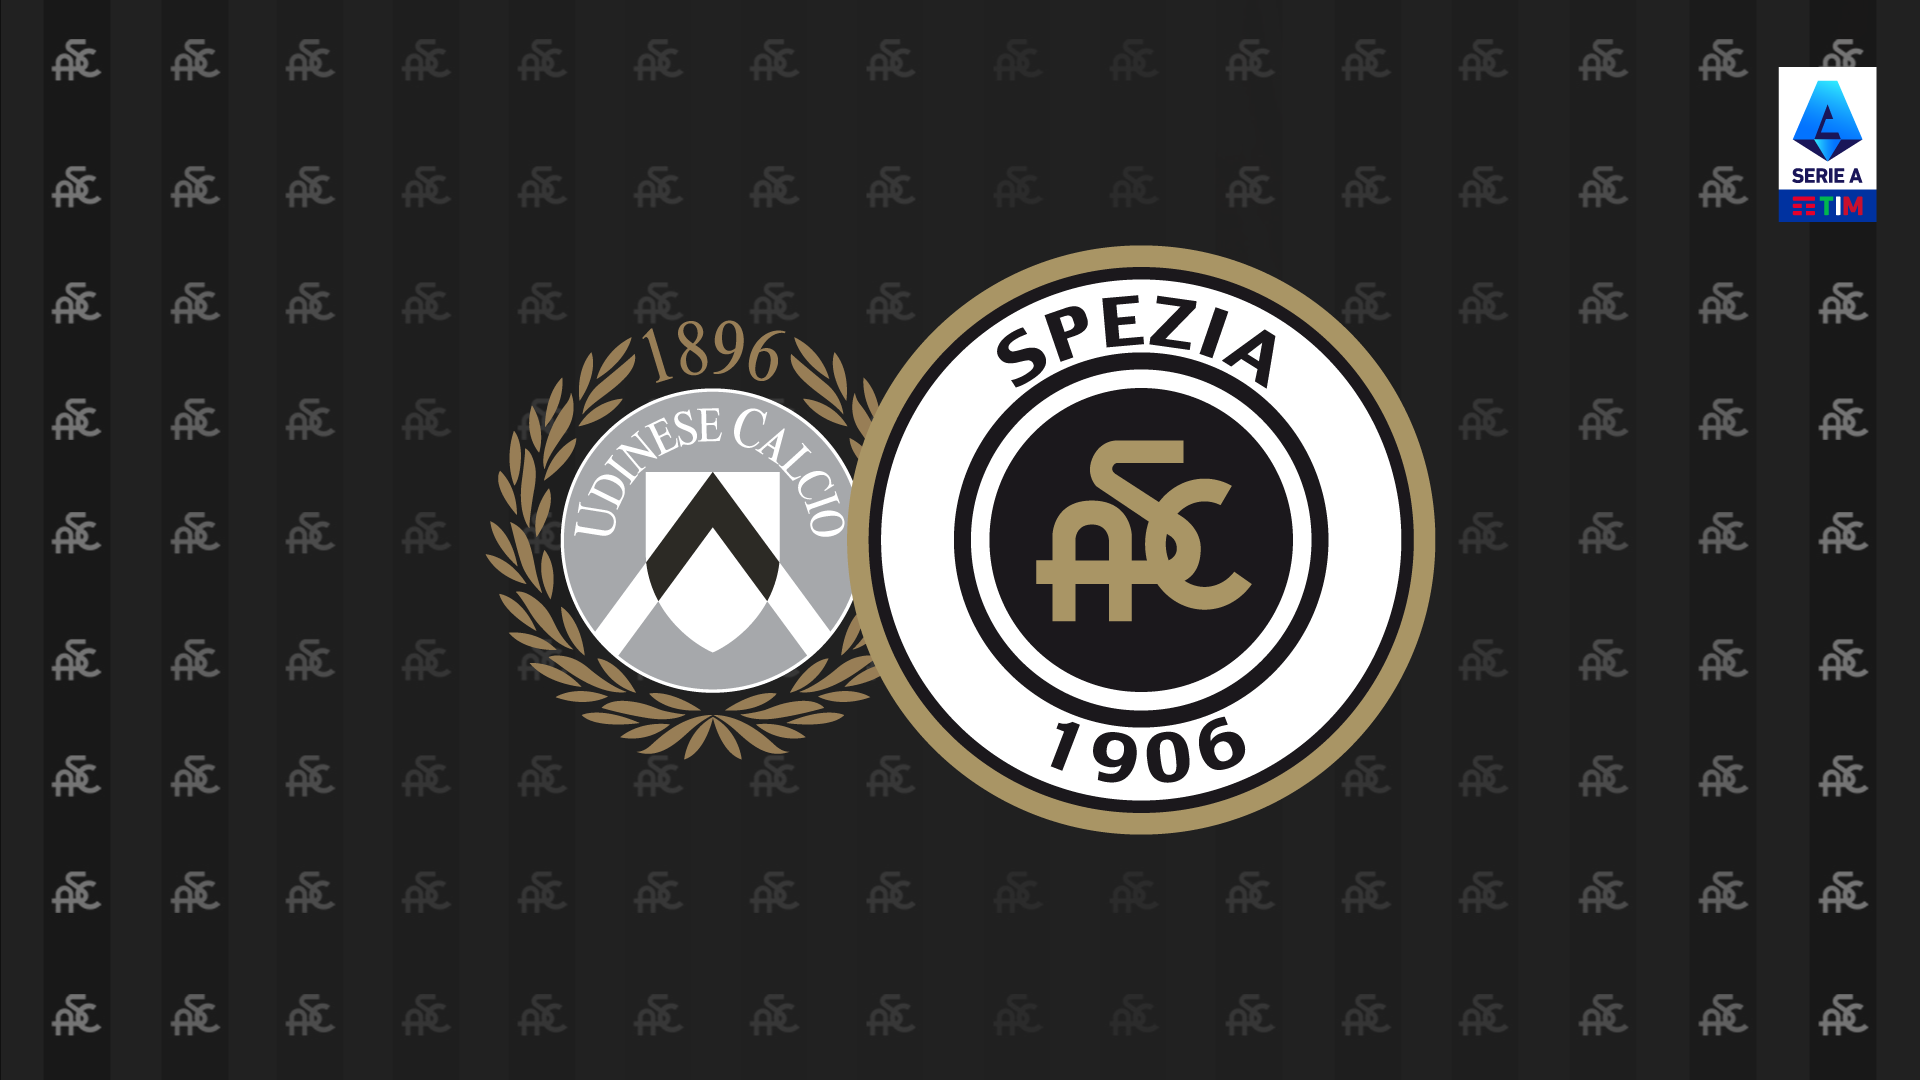 Udinese-Spezia: prevendita disponibile su TicketOne